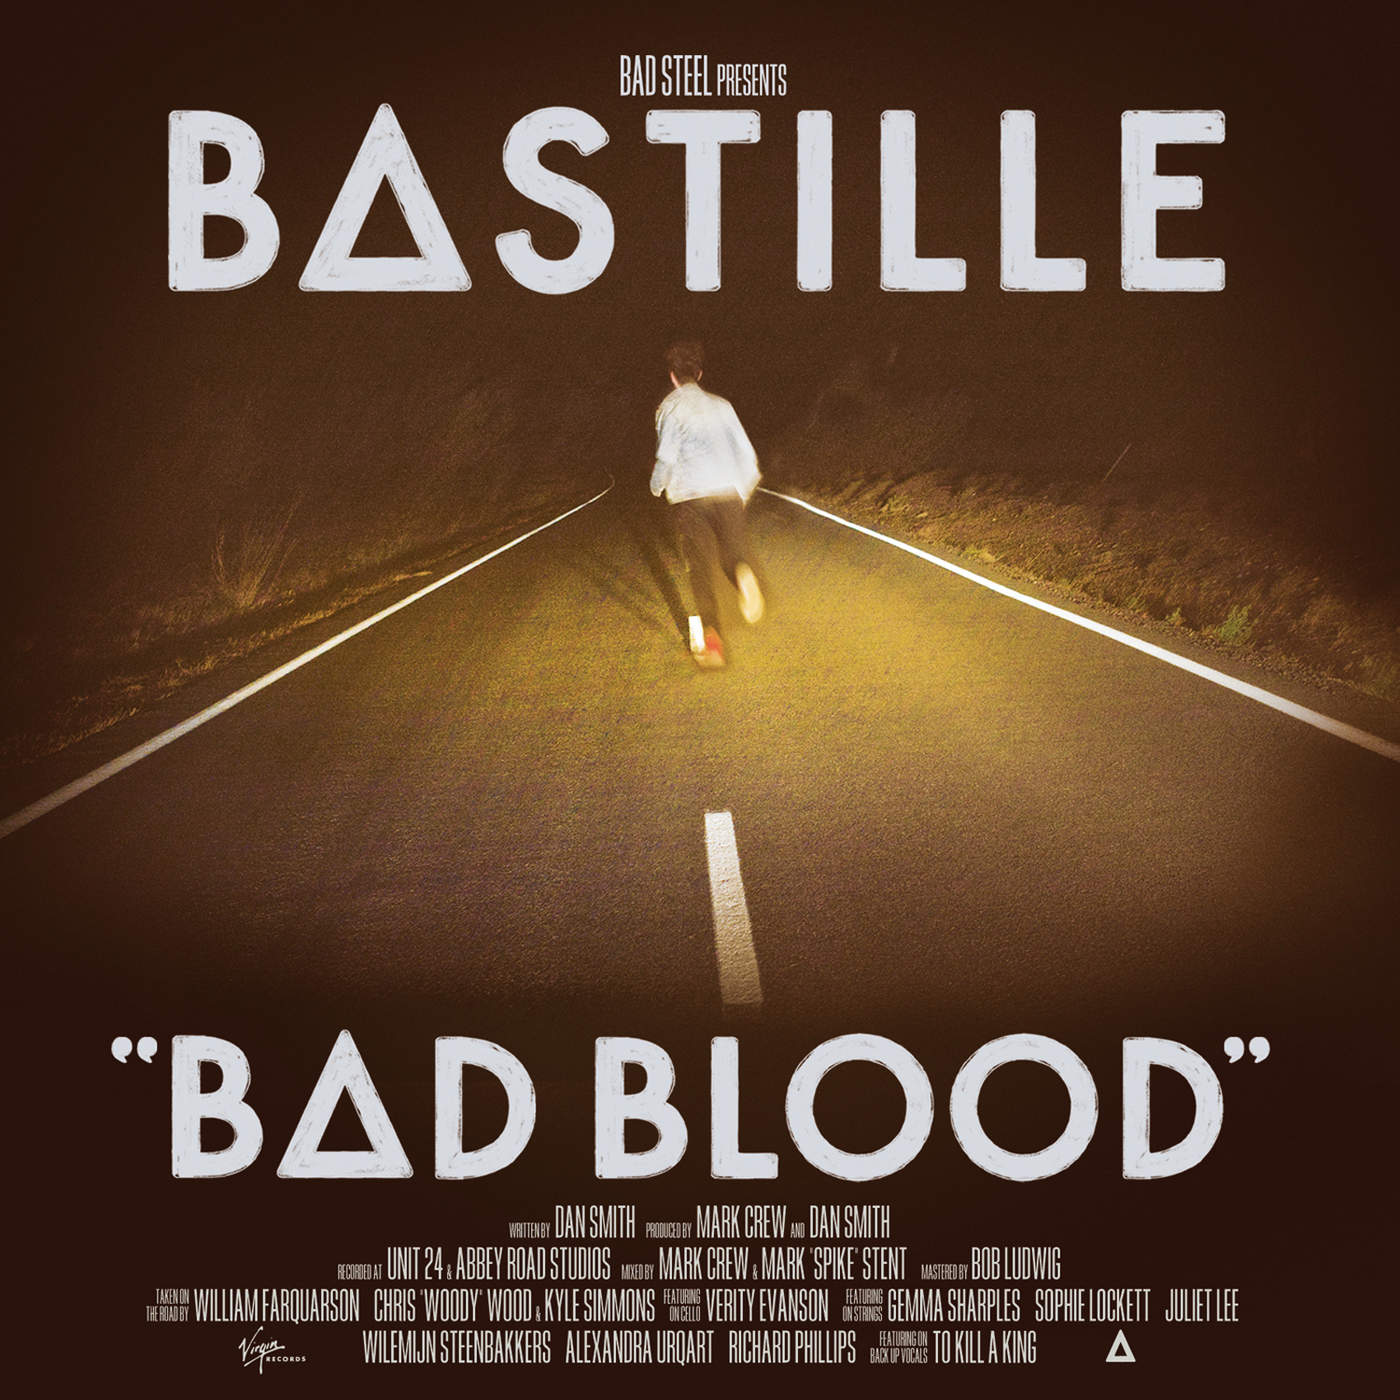 Art for Bad Blood by Bastille